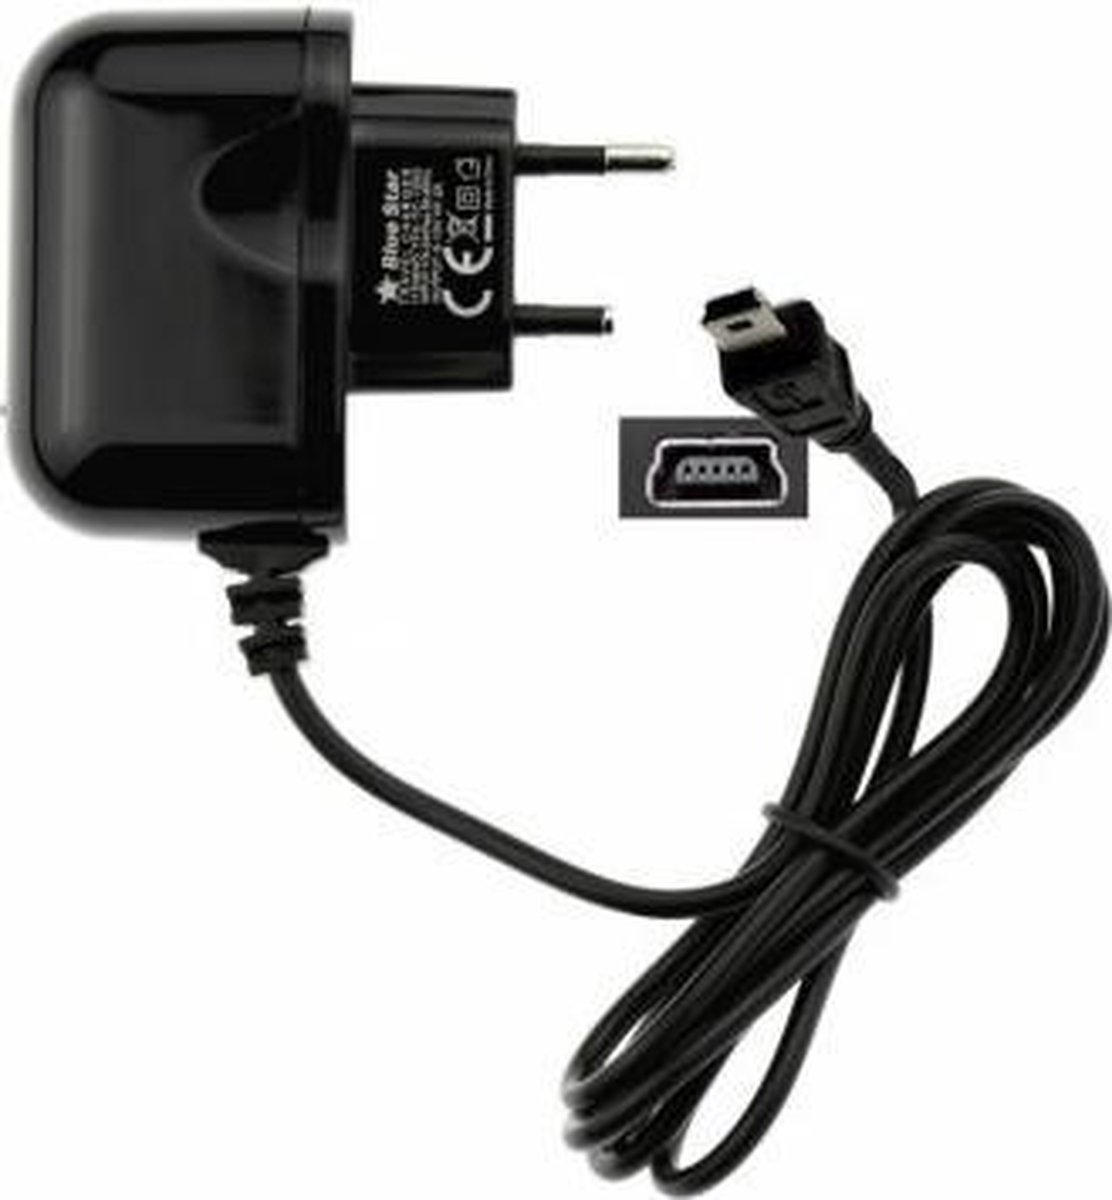 Oplader 220V voor Garmin drivesmart 60   - 2 ampere mini USB lader - ABC-Led